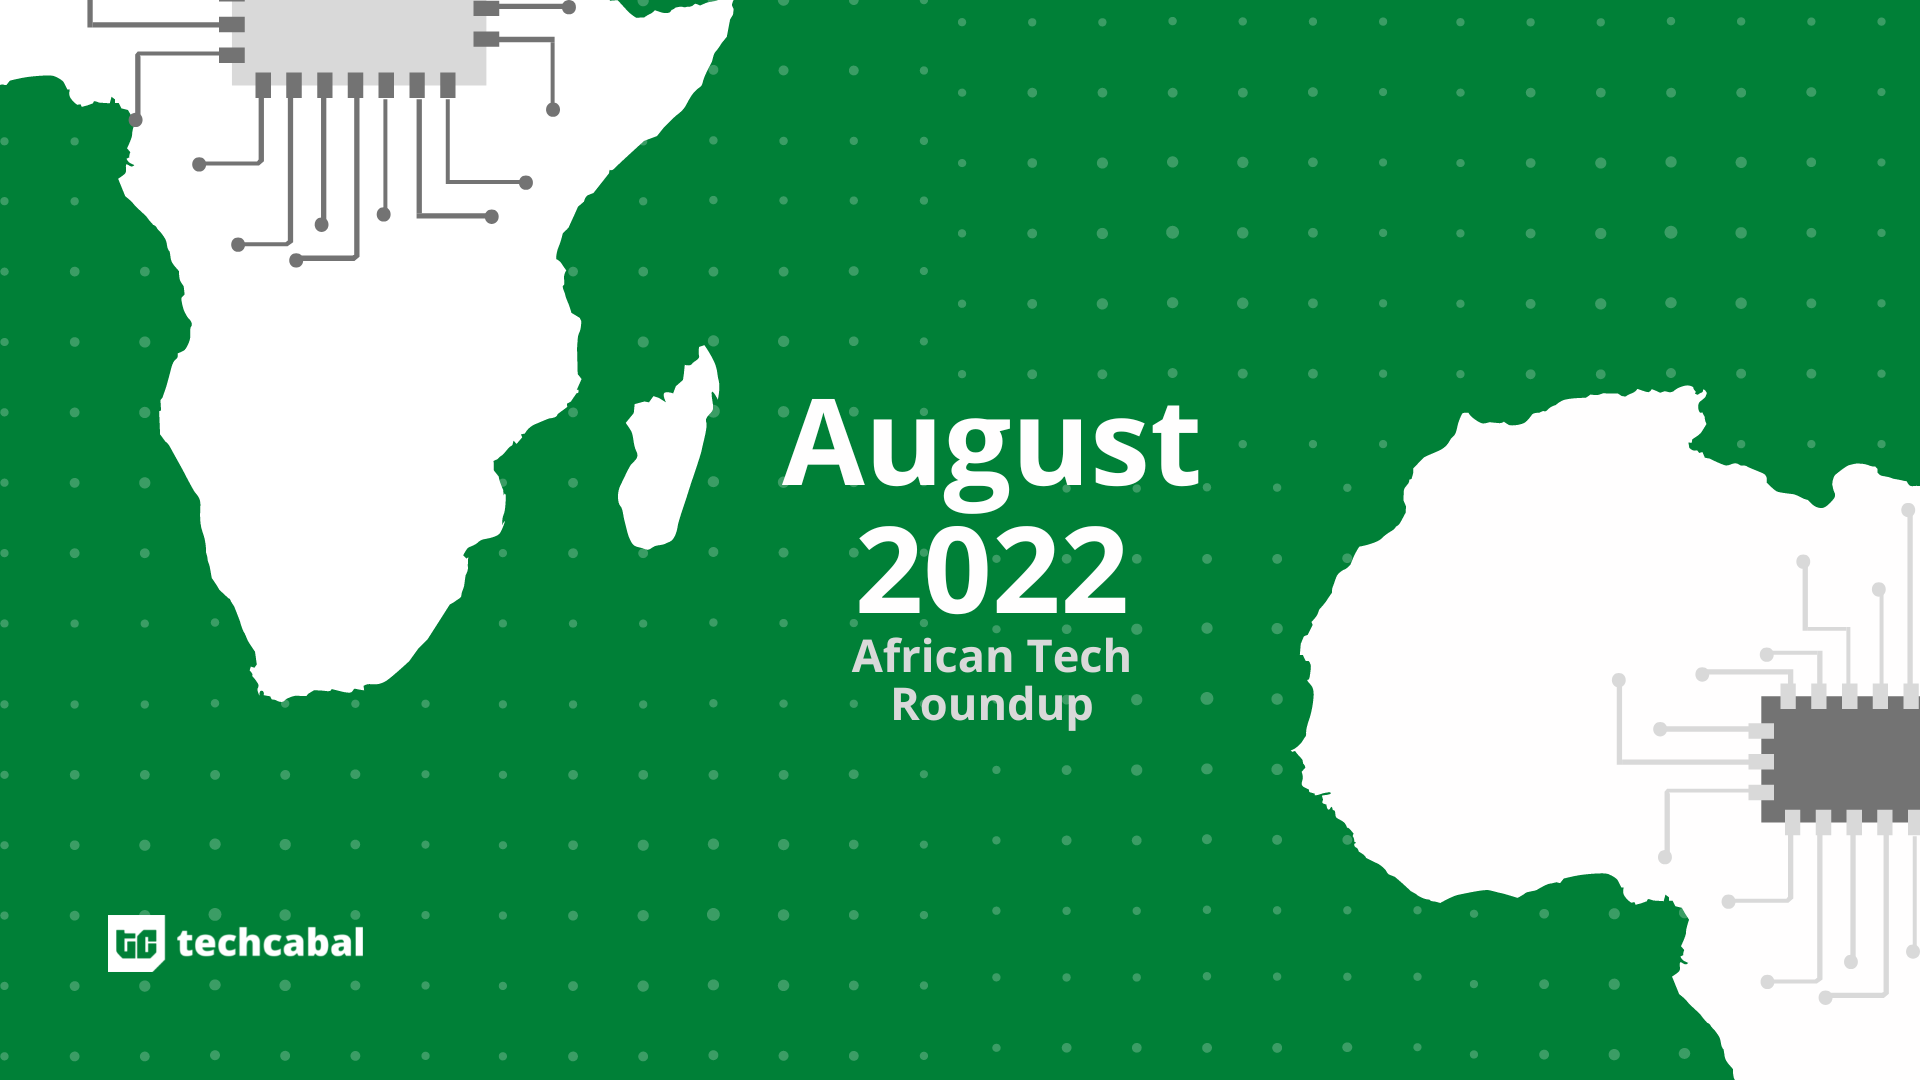 African tech August 2022